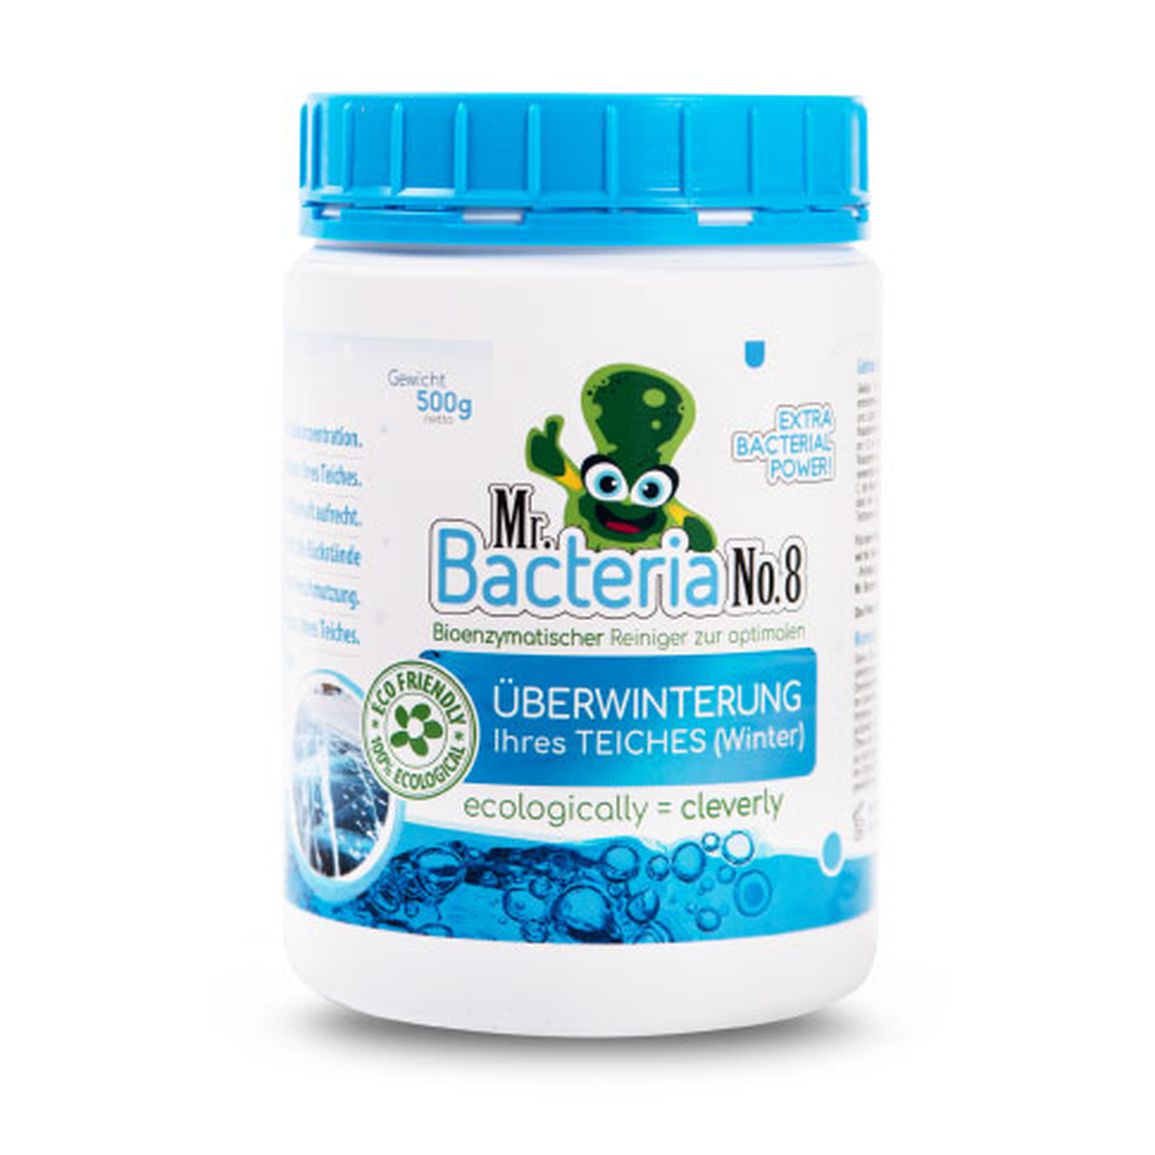 Mr.Bacteria No.8 Bioenzymatischer Reiniger zur optimale